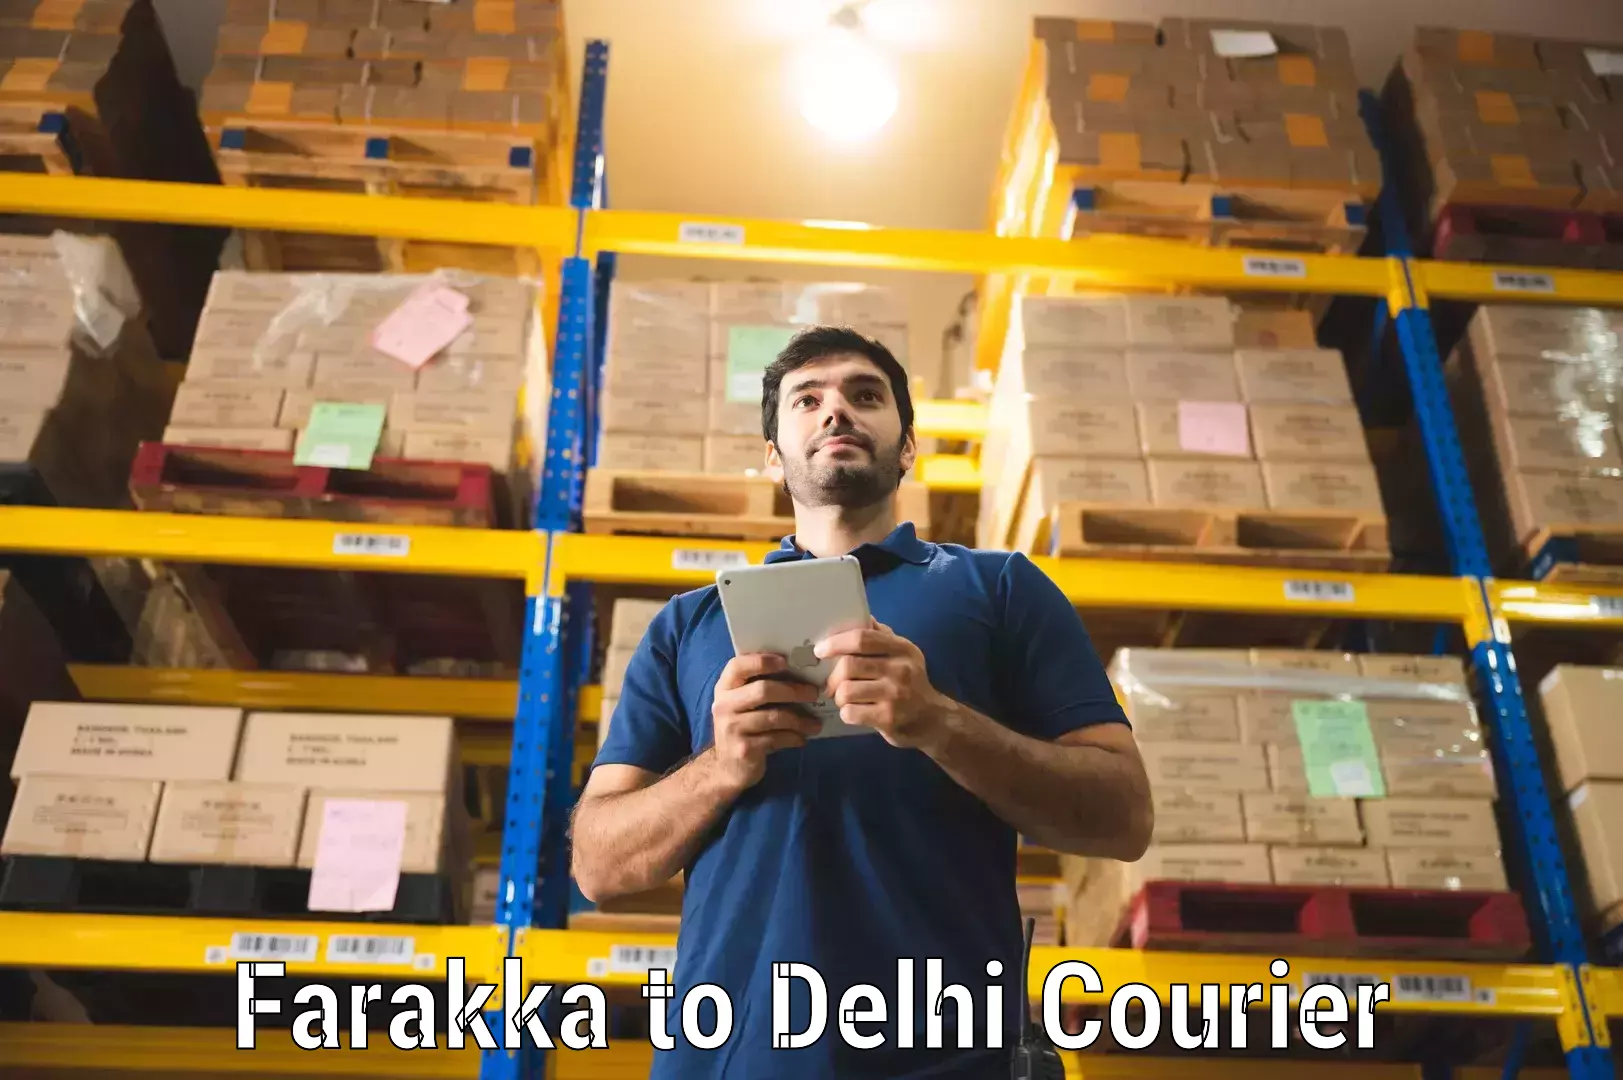 Fast delivery service Farakka to Delhi